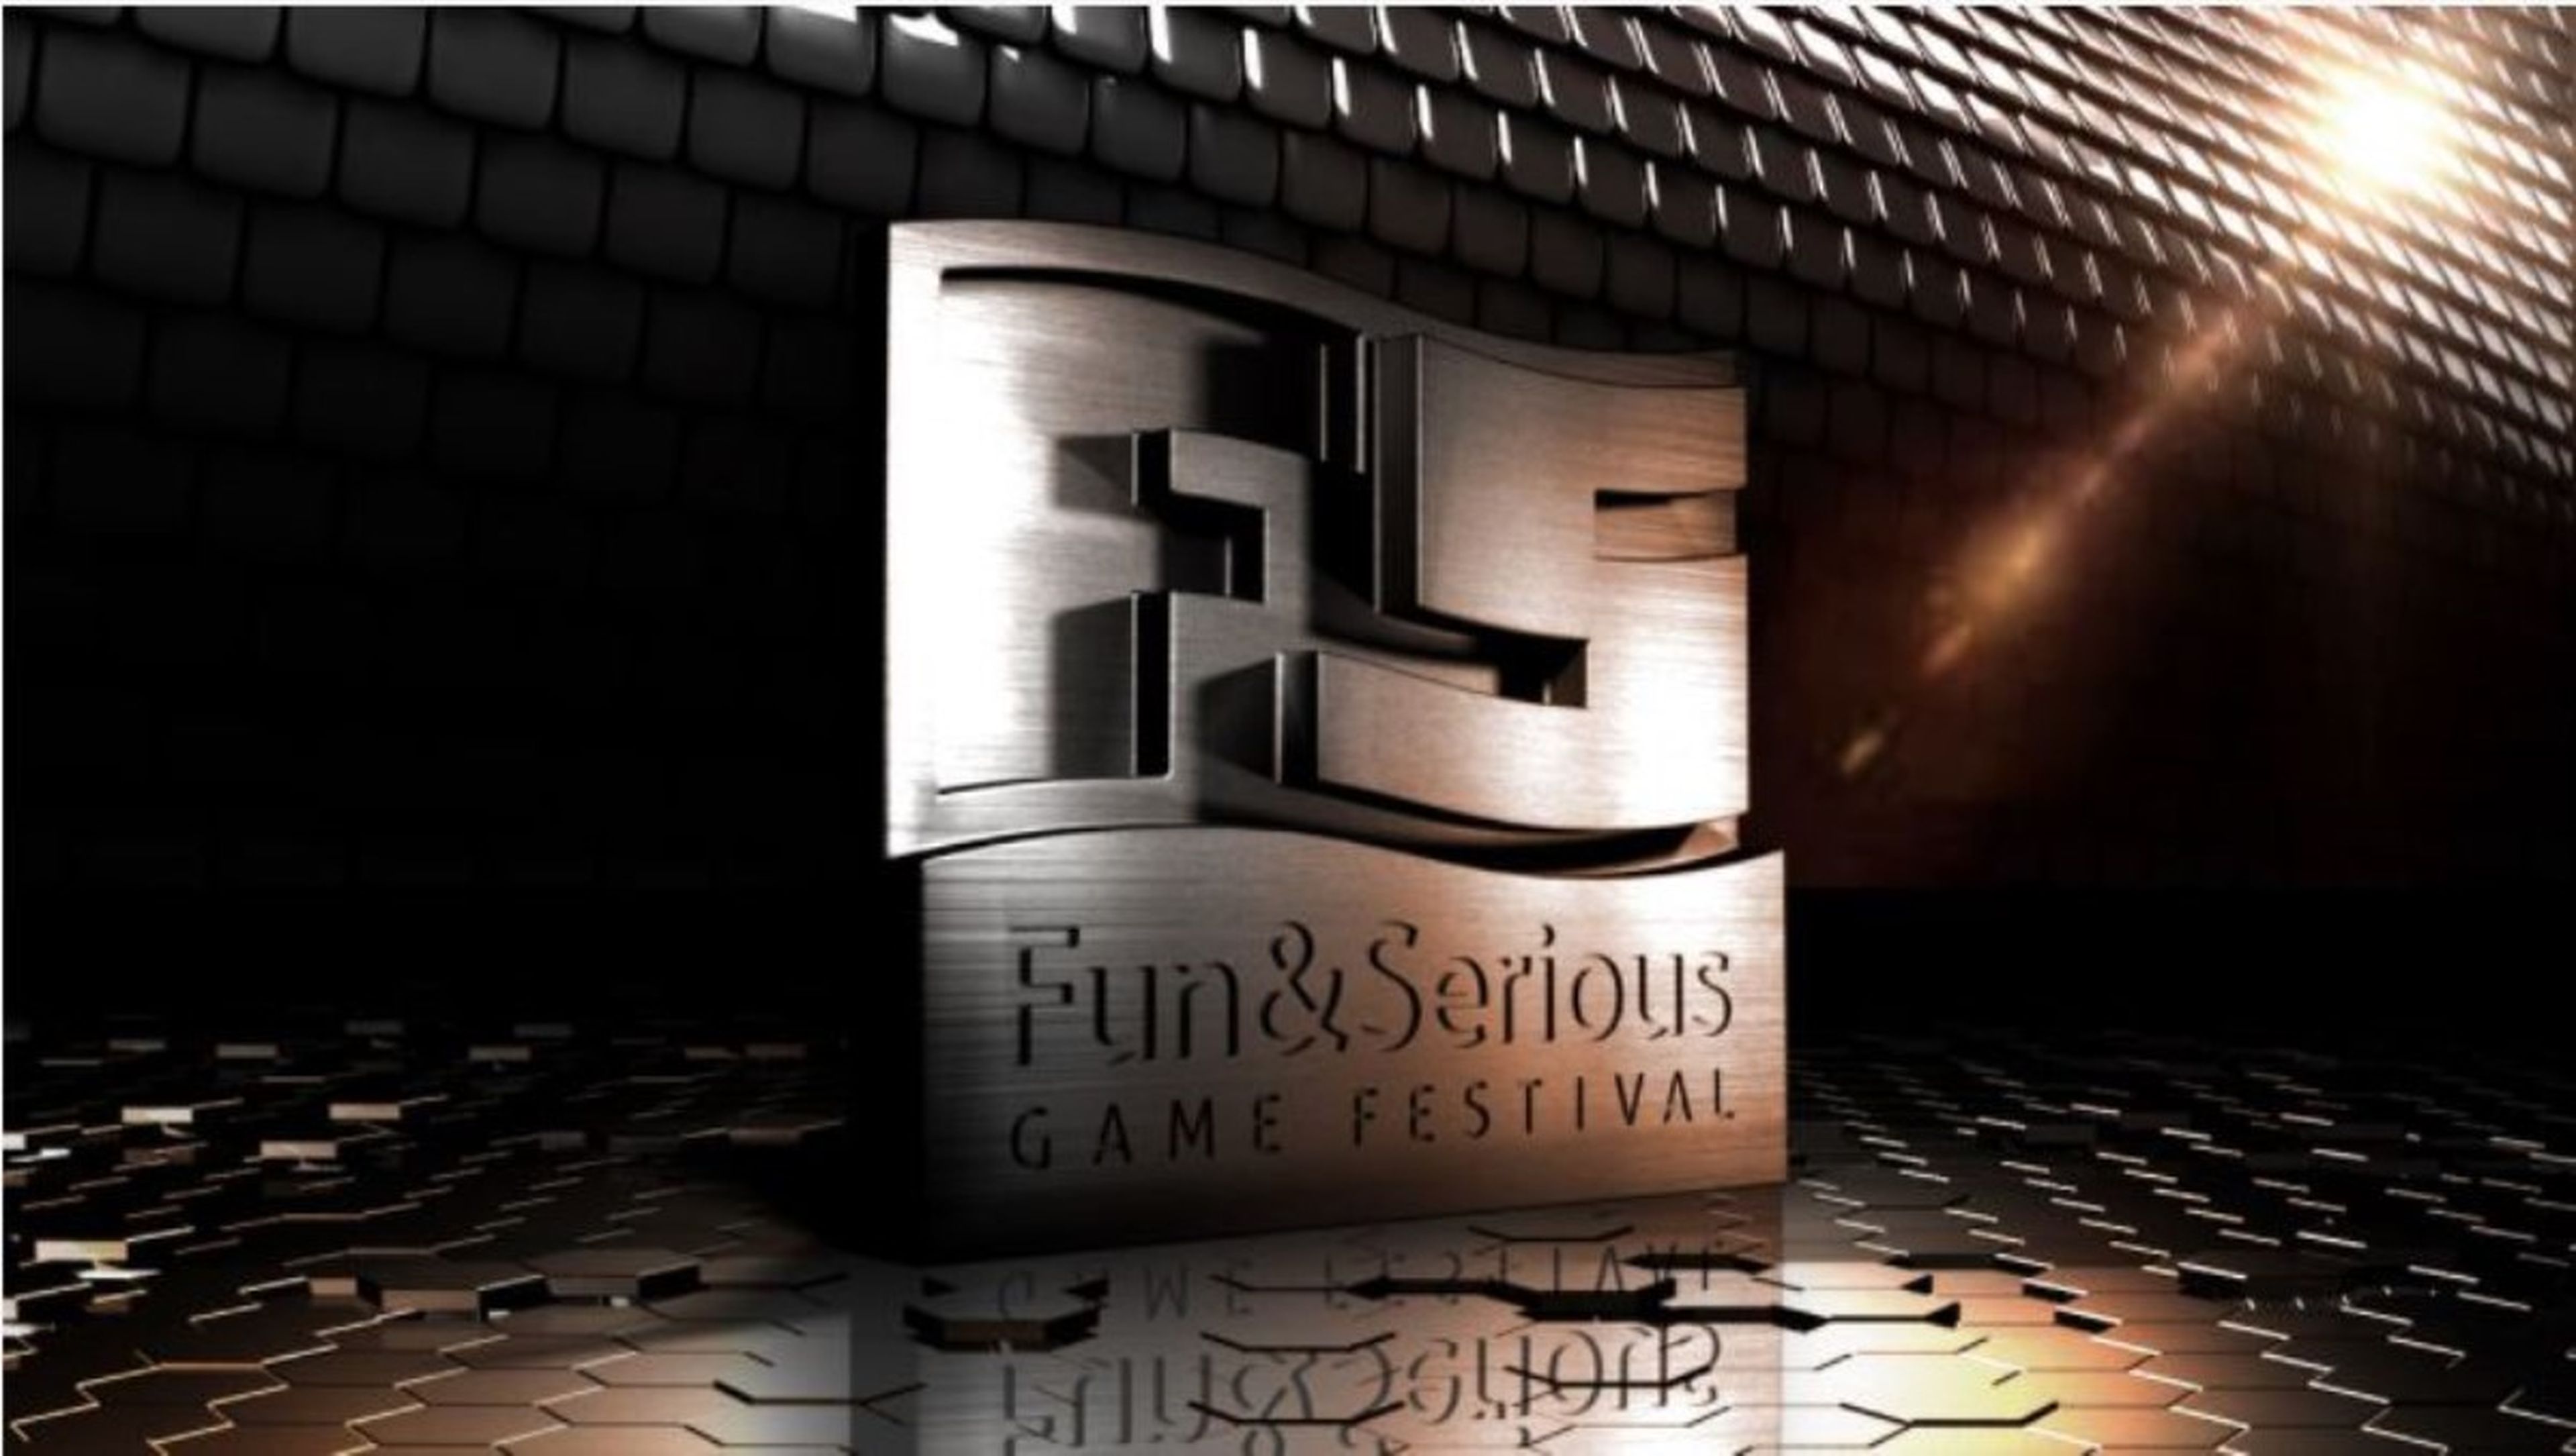 Fun & Serious Game Festival Titanium